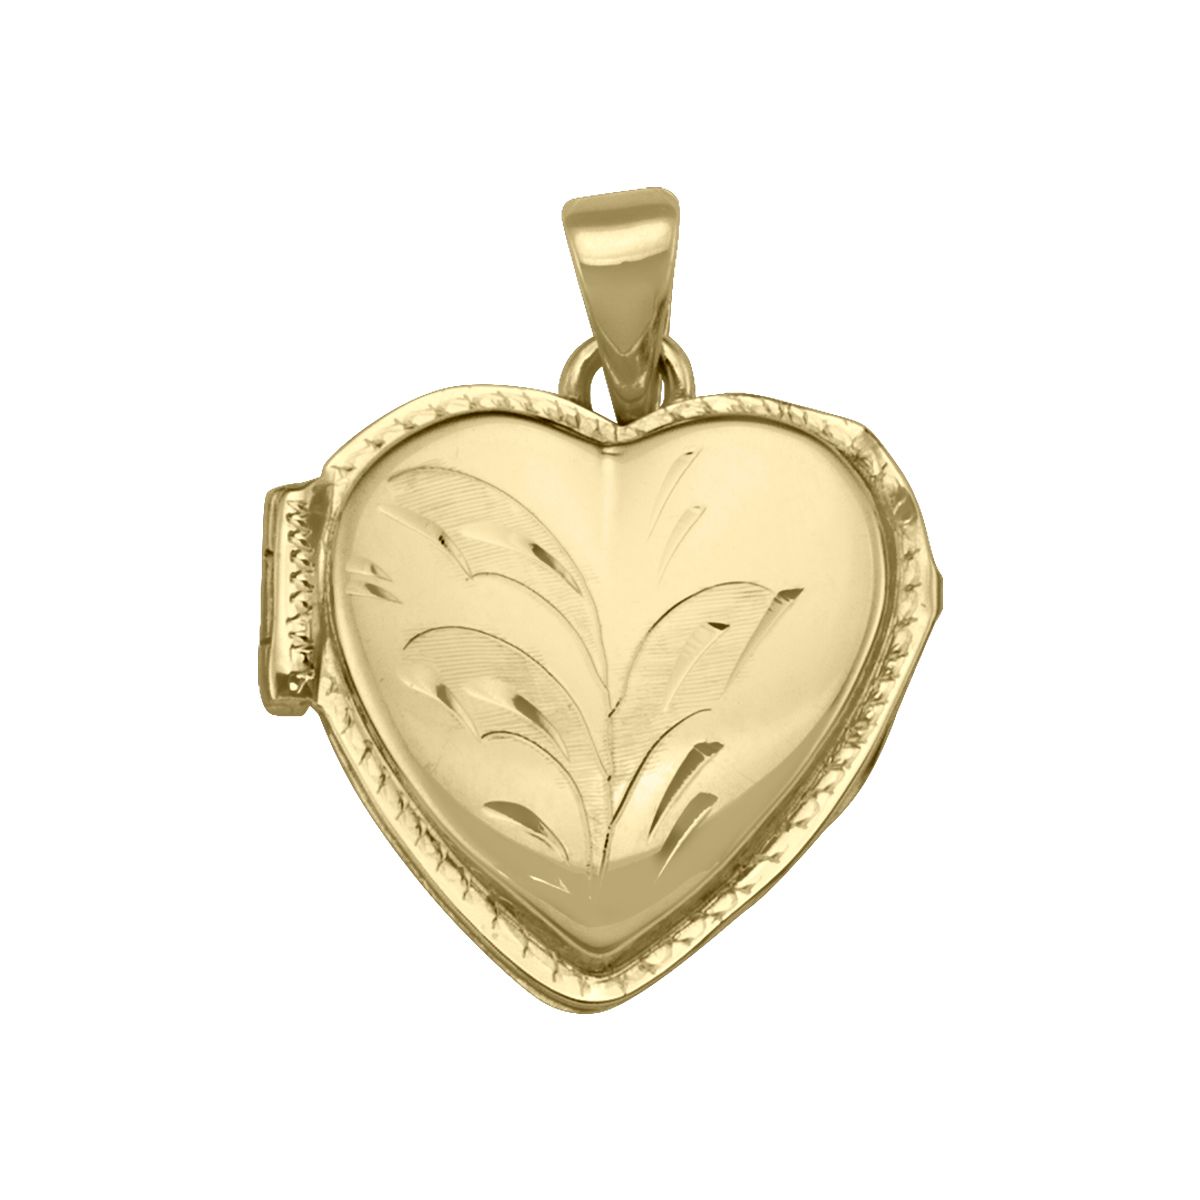 PL0102, Gold Locket, Heart Shape, Floral